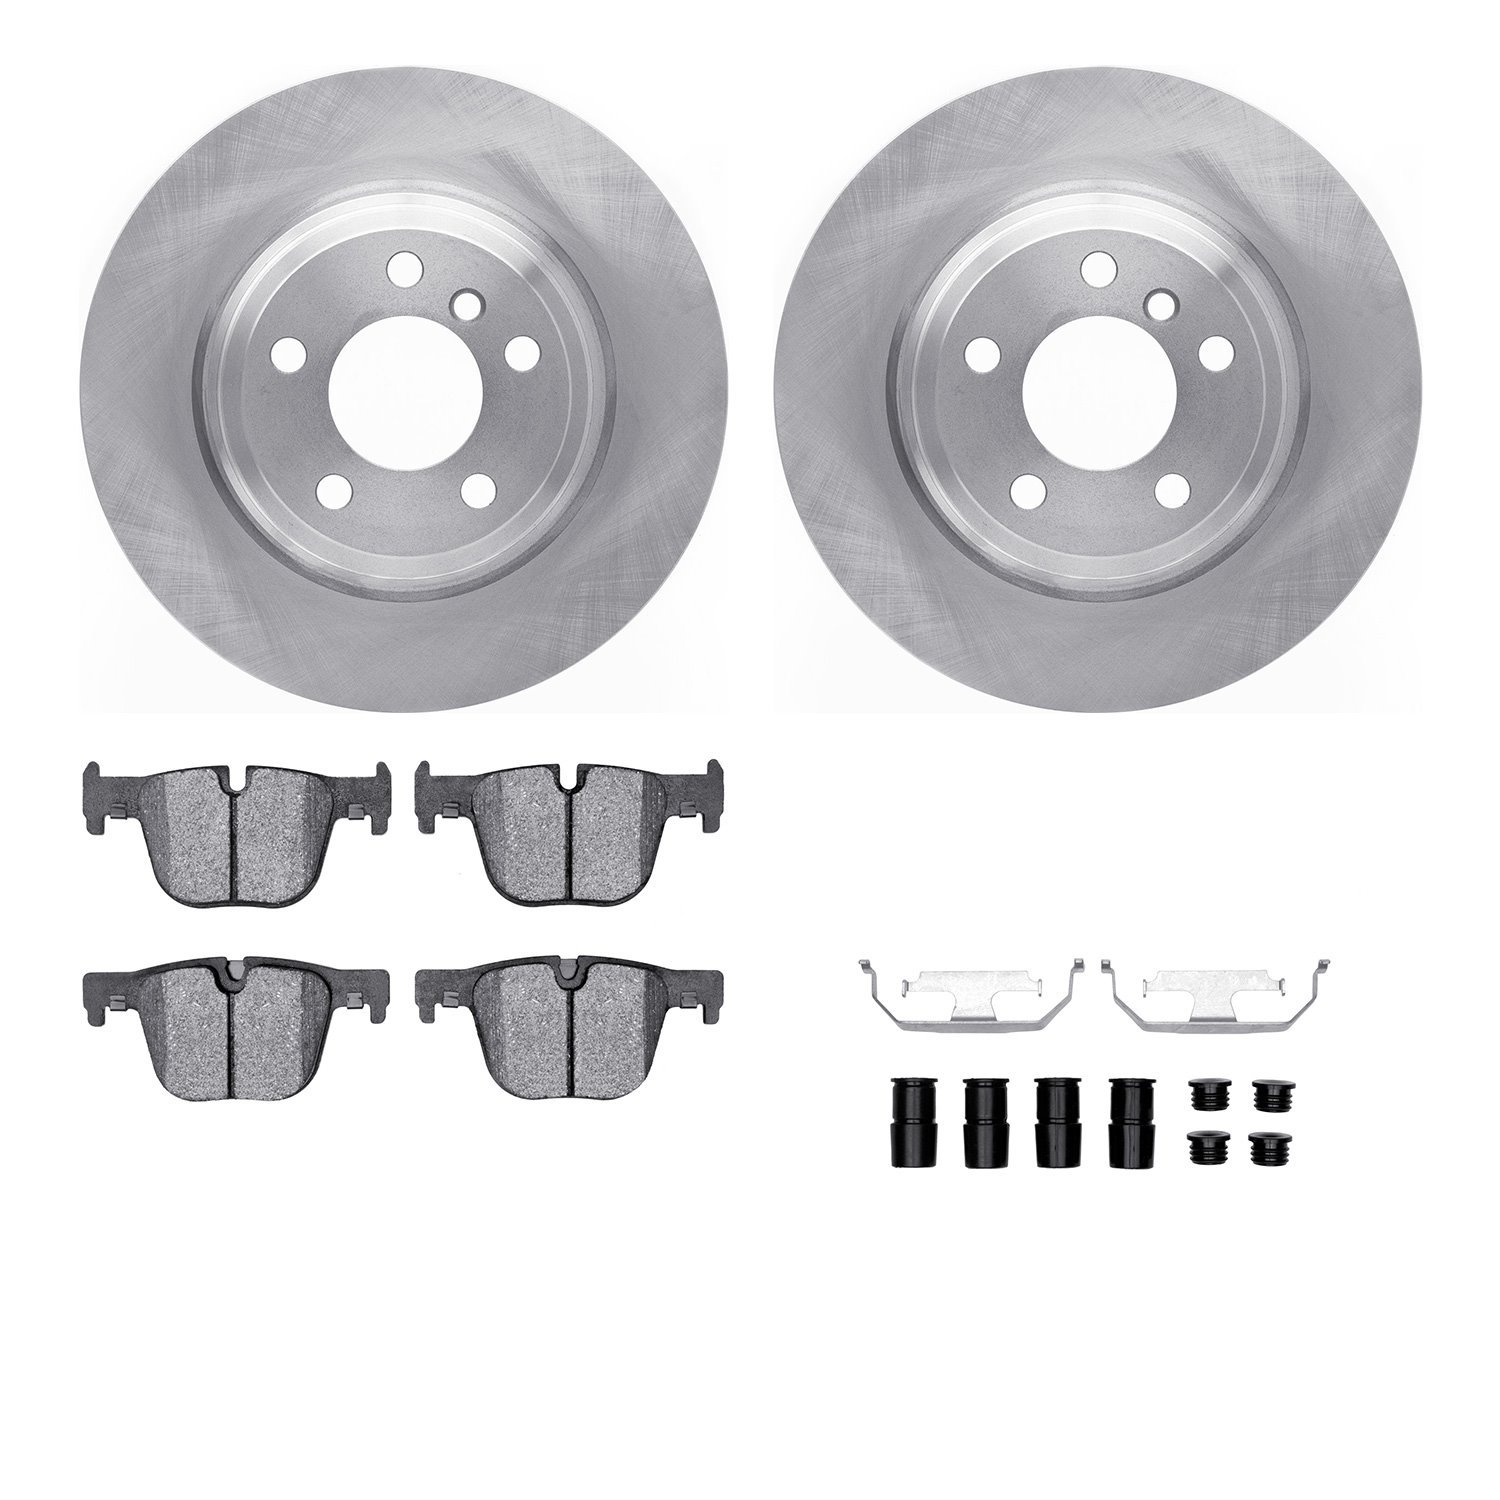 6612-31387 Brake Rotors w/5000 Euro Ceramic Brake Pads Kit with Hardware, 2012-2020 BMW, Position: Rear